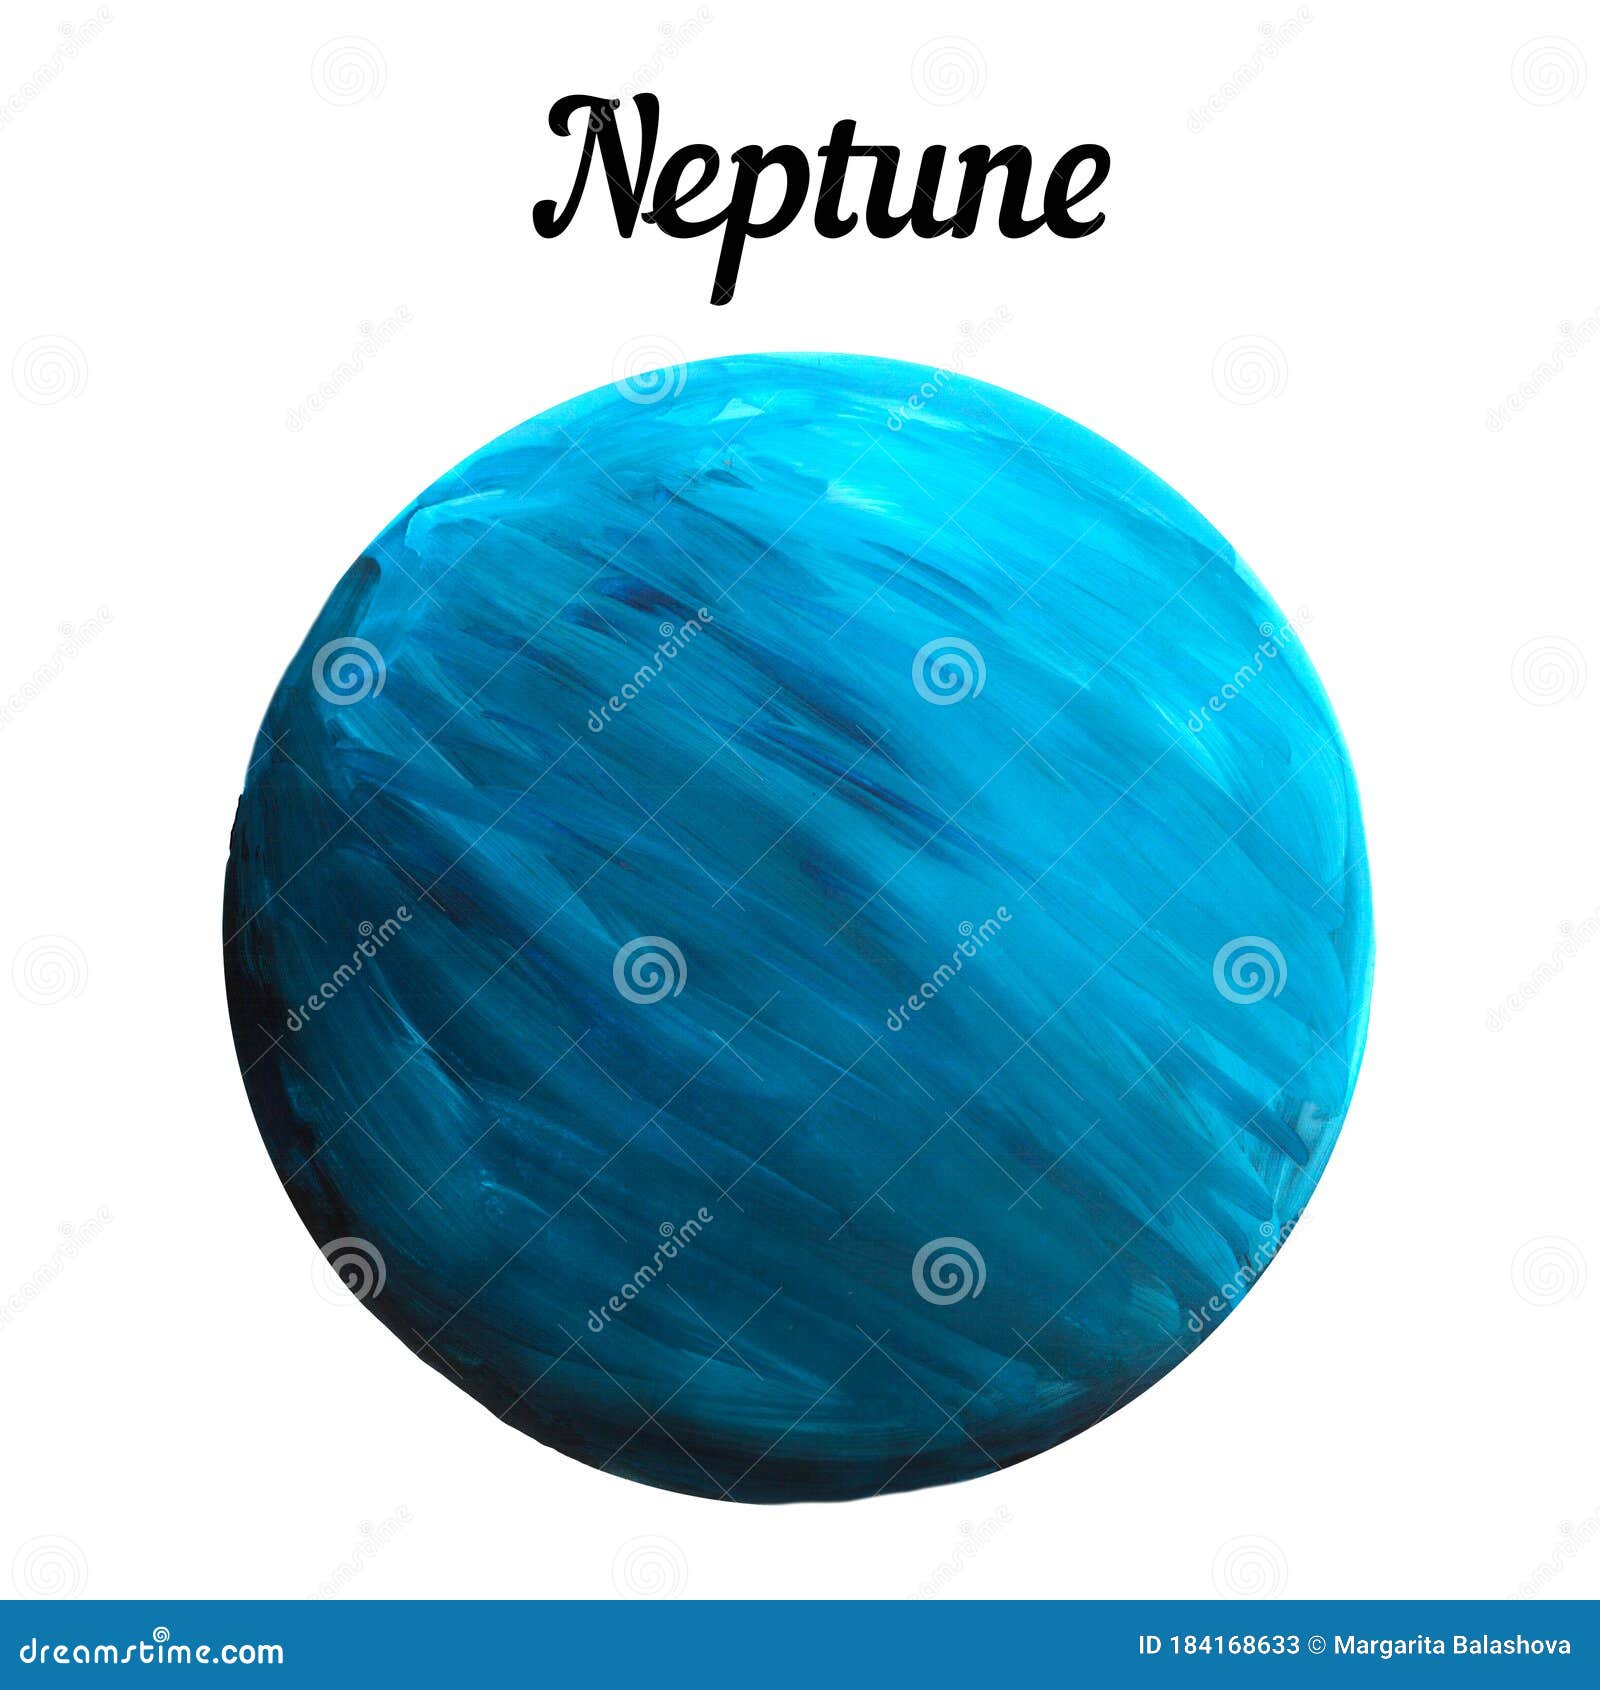 Bức tranh minh họa đầy màu sắc về hành tinh Neptune sẽ đưa bạn vào một thế giới khoa học viễn tưởng đầy mê hoặc. Hãy tưởng tượng những cơn bão khổng lồ và những vùng đất đổ nát trên hành tinh làm đôi mắt bạn háo hức muốn khám phá hơn nữa.